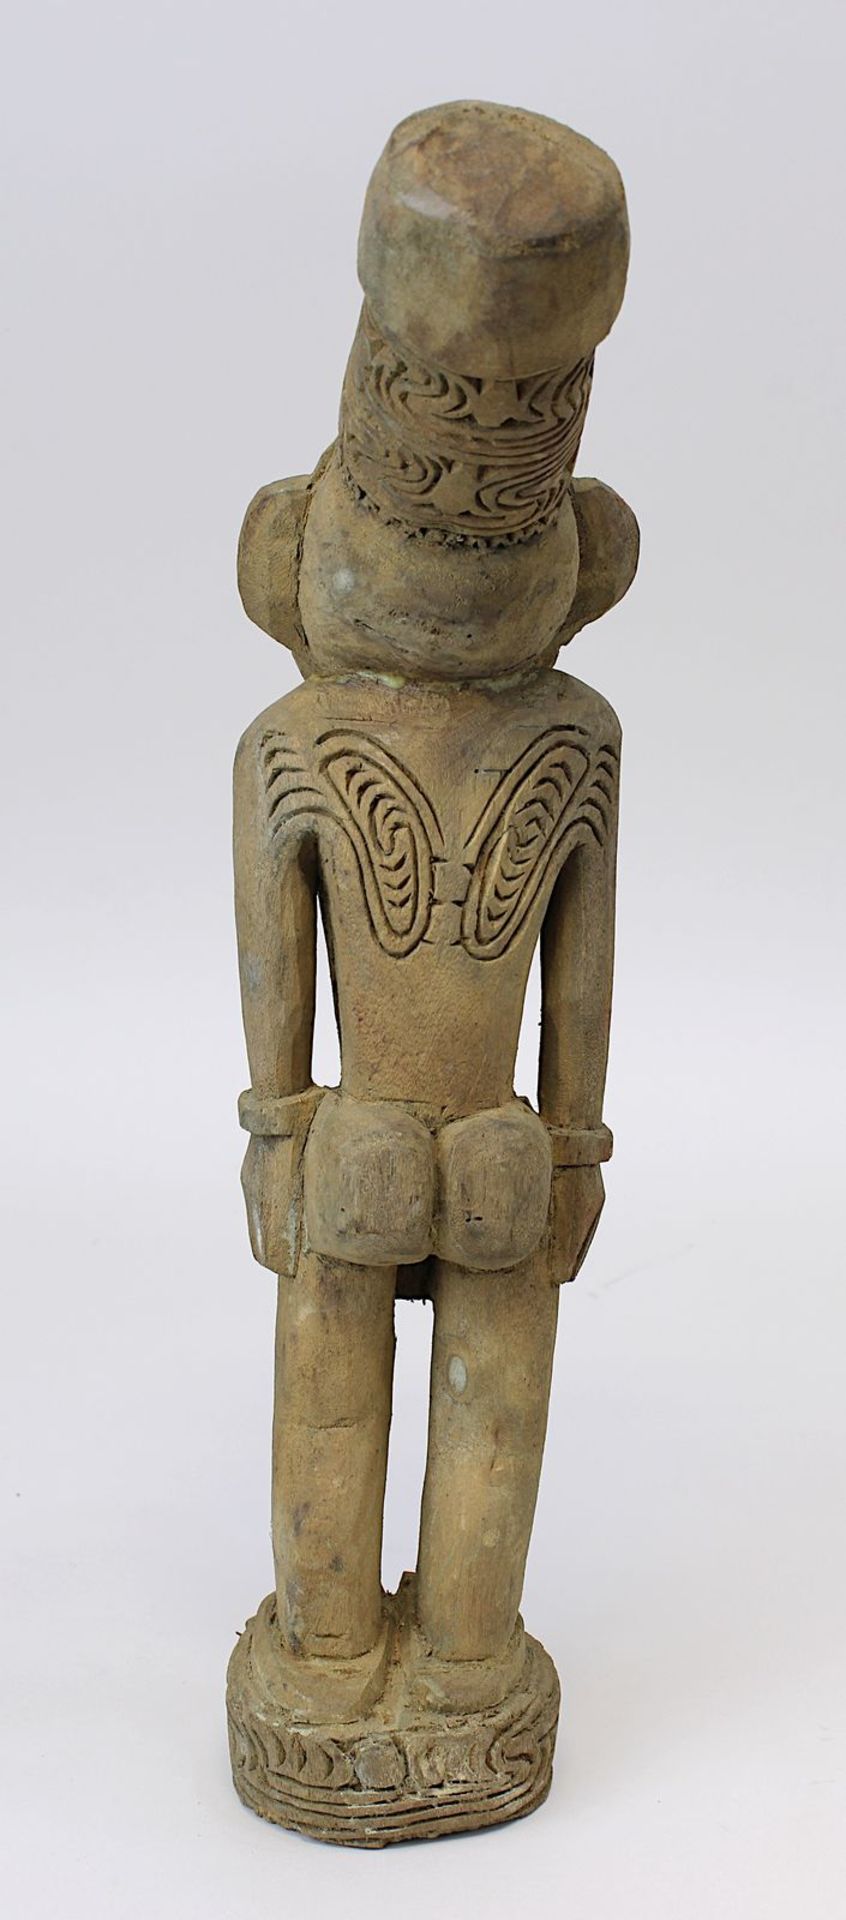 Stehende männliche Figur mit hohem nach hinten geneigtem Kopfputz, Sepik, Papua-Neuguinea, Holz - Bild 2 aus 2